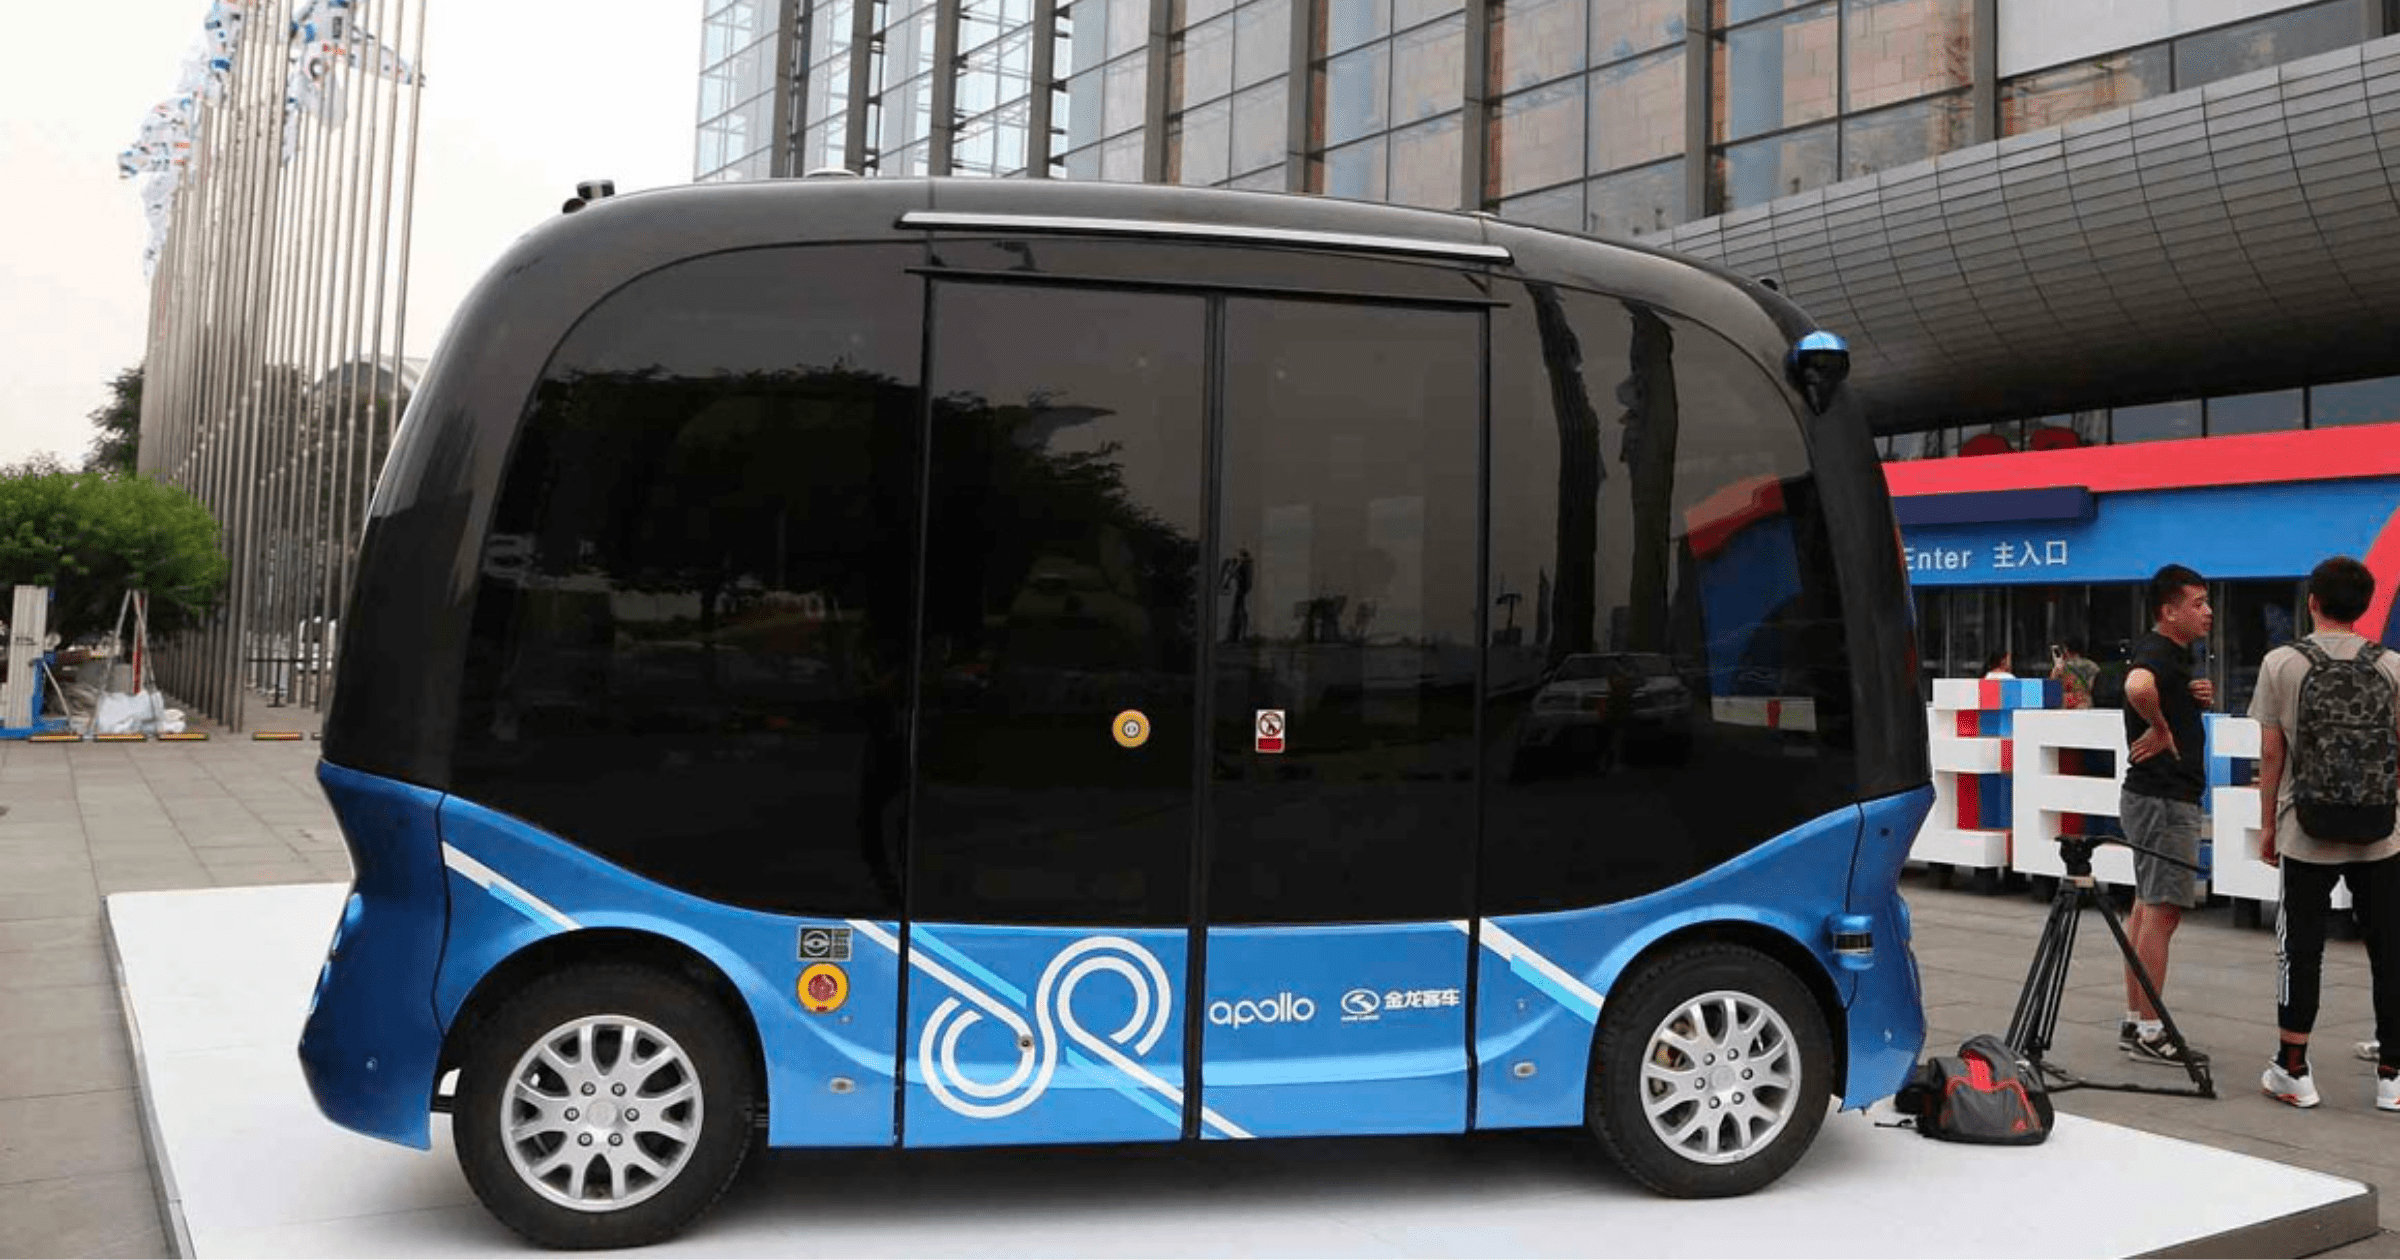 Китайская компания предложила проекты по строительству экоферм и производству смарт-автобусов